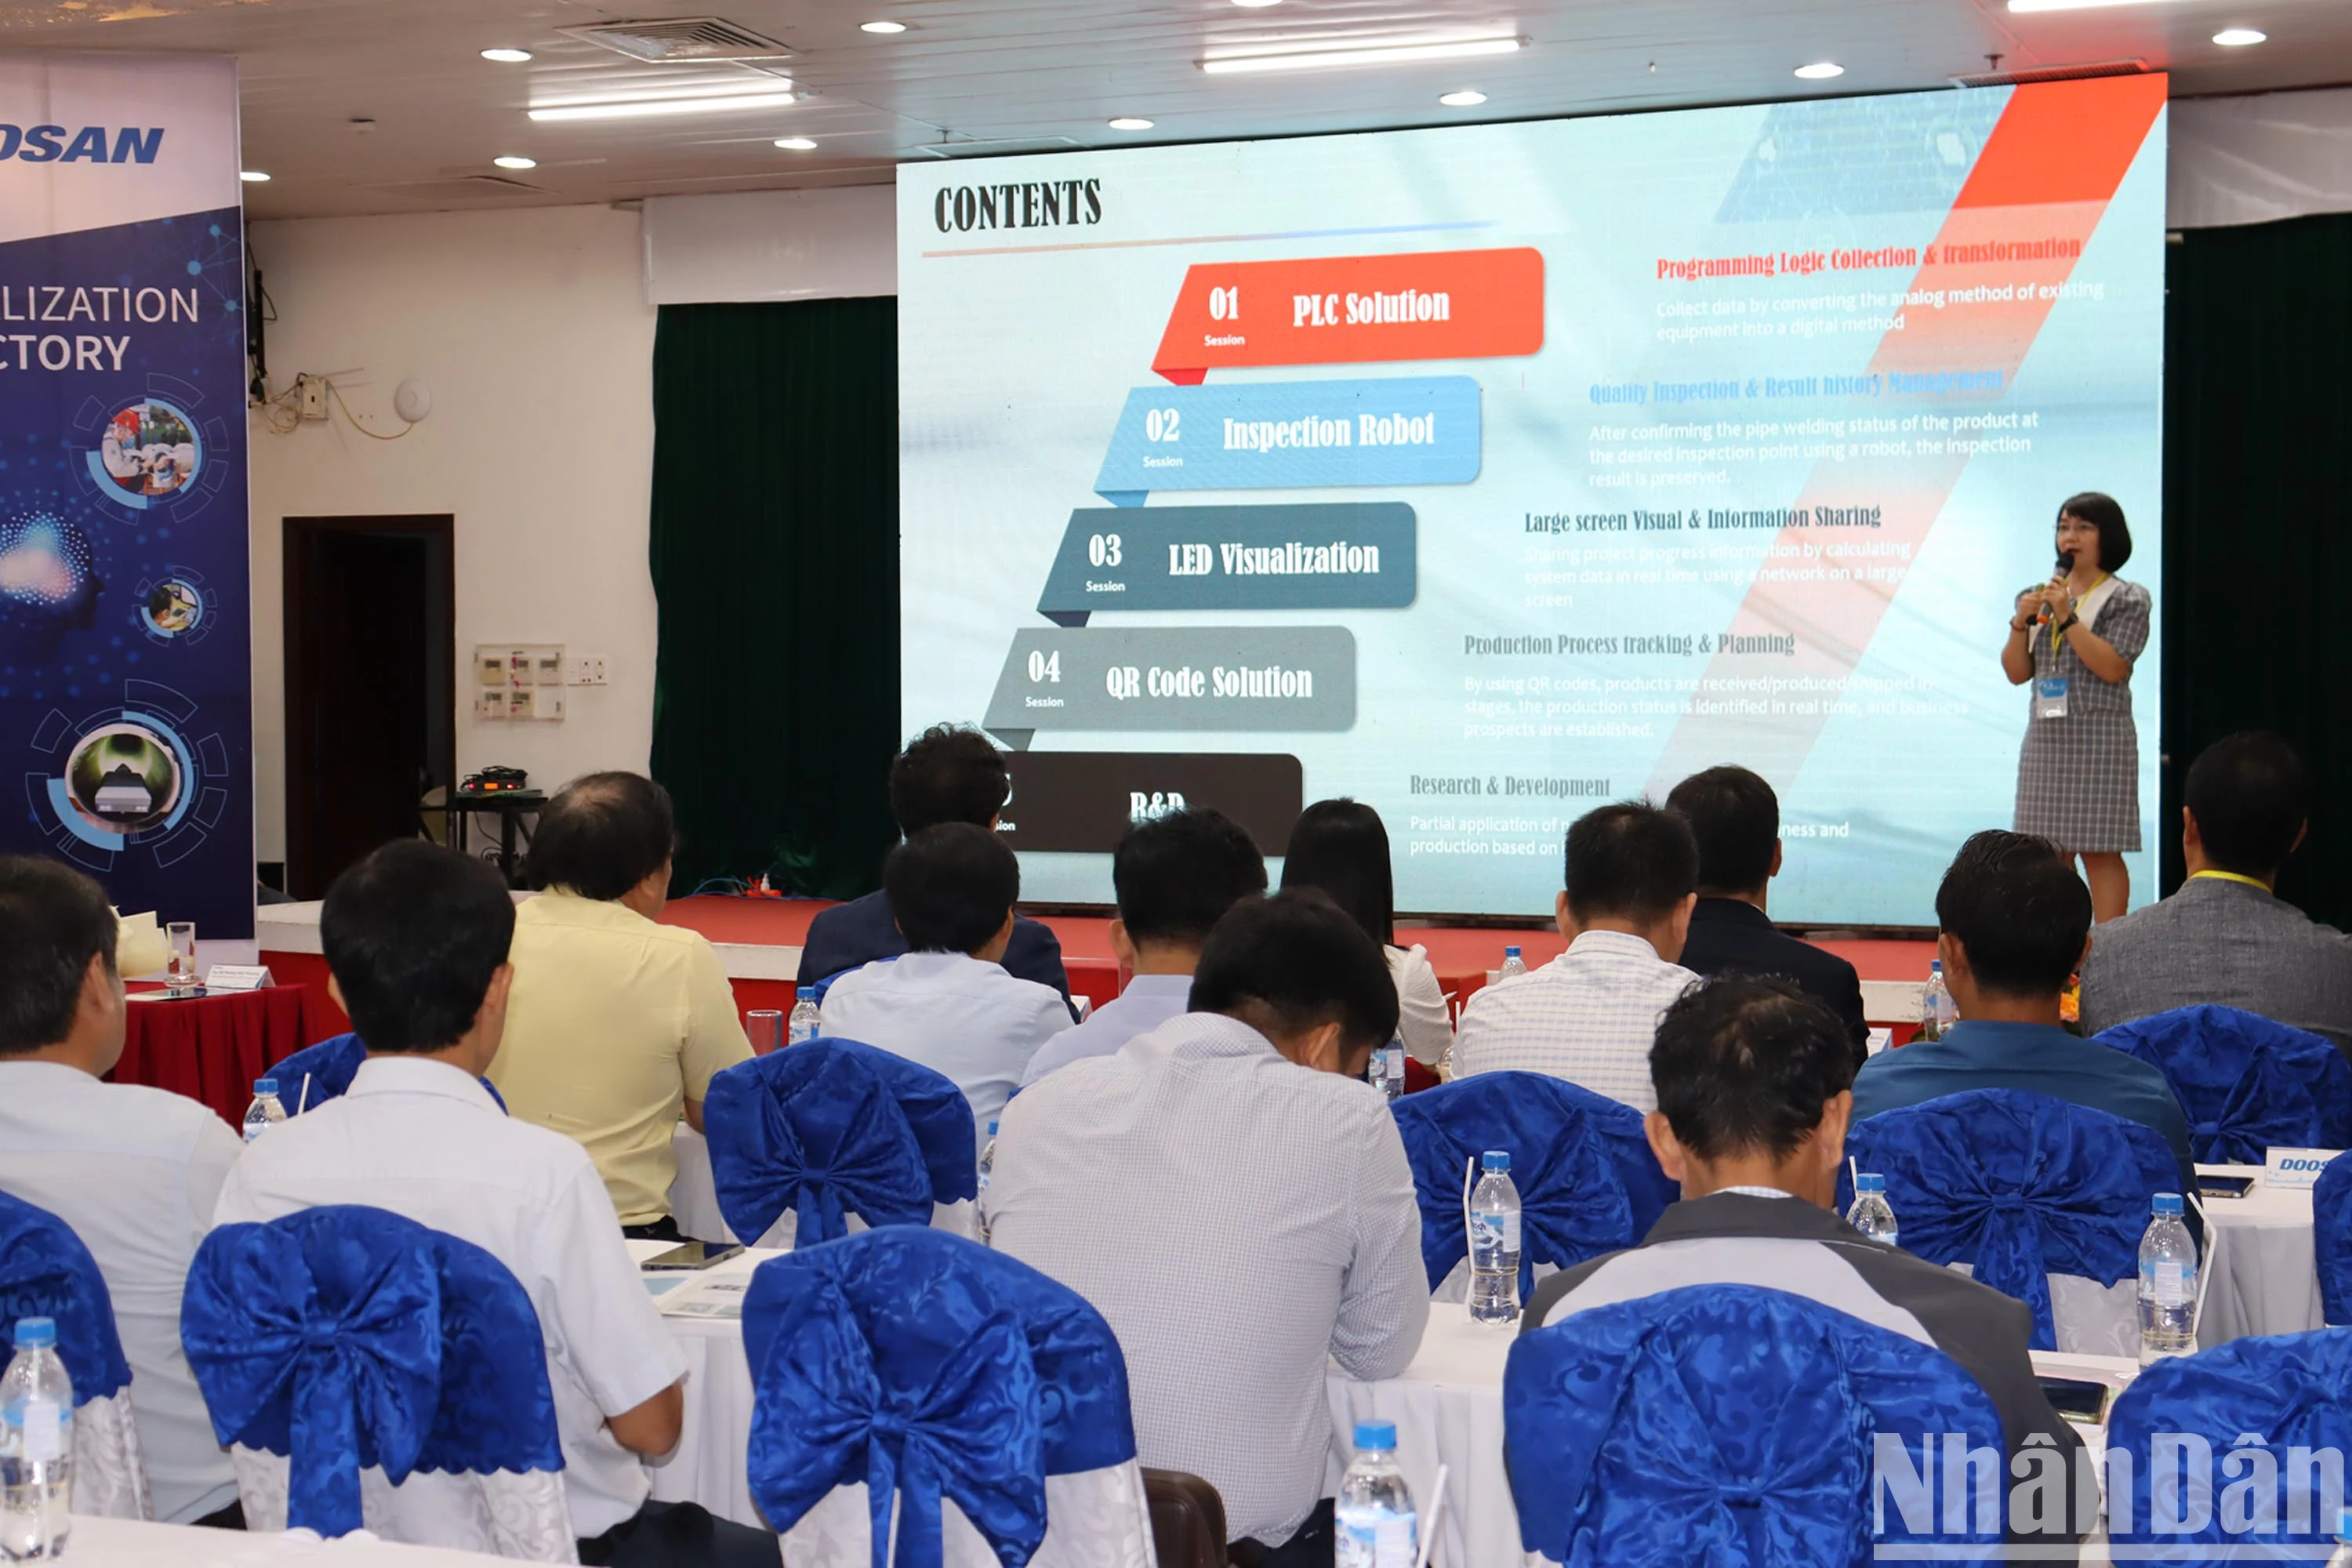 Chị Lê Thị Duy Huyên, chuyên gia của Doosan Vina chia sẻ quá trình chuyển đổi số về nhà máy thông minh.